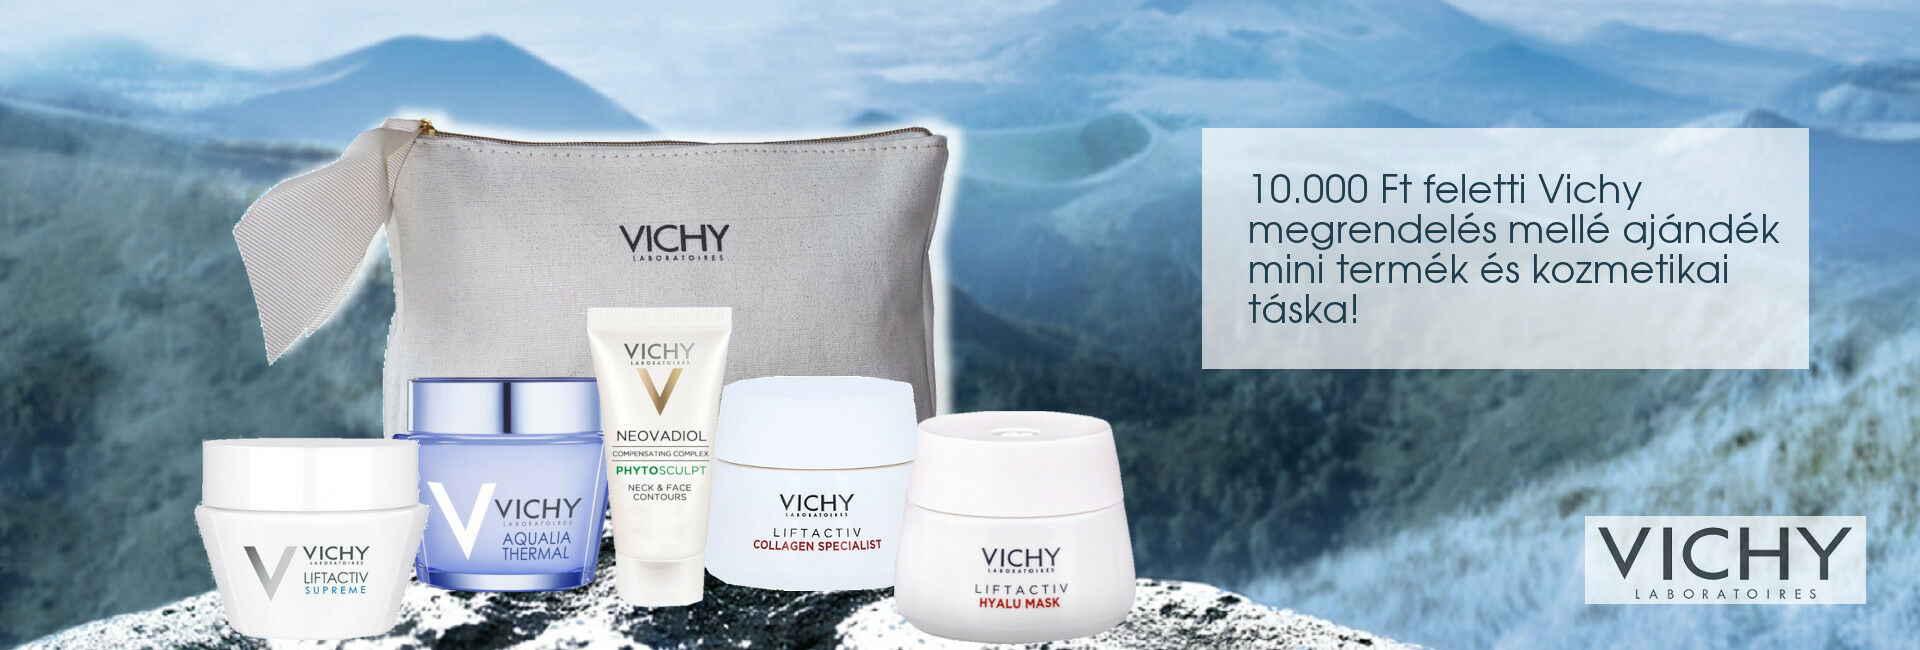 2020. július 2-8. között minden 10.000 Ft feletti Vichy megrendelés mellé választható mini Vichy arcápoló terméket és exkluzív Vichy kozmetikai táskát adunk ajándékba!